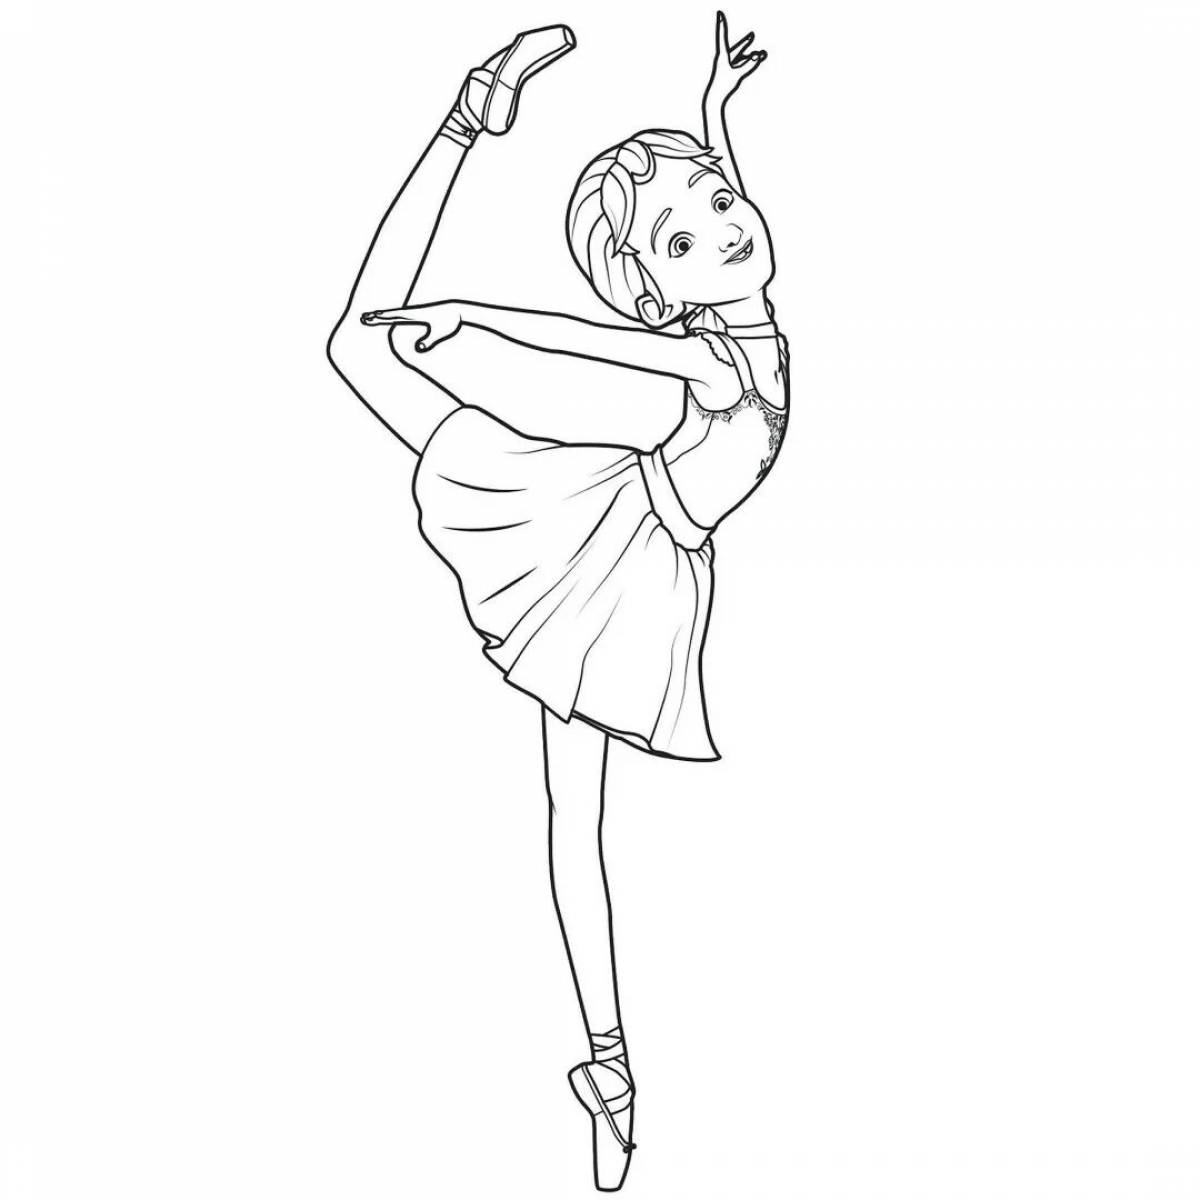 Charming ballerina cartoon coloring book